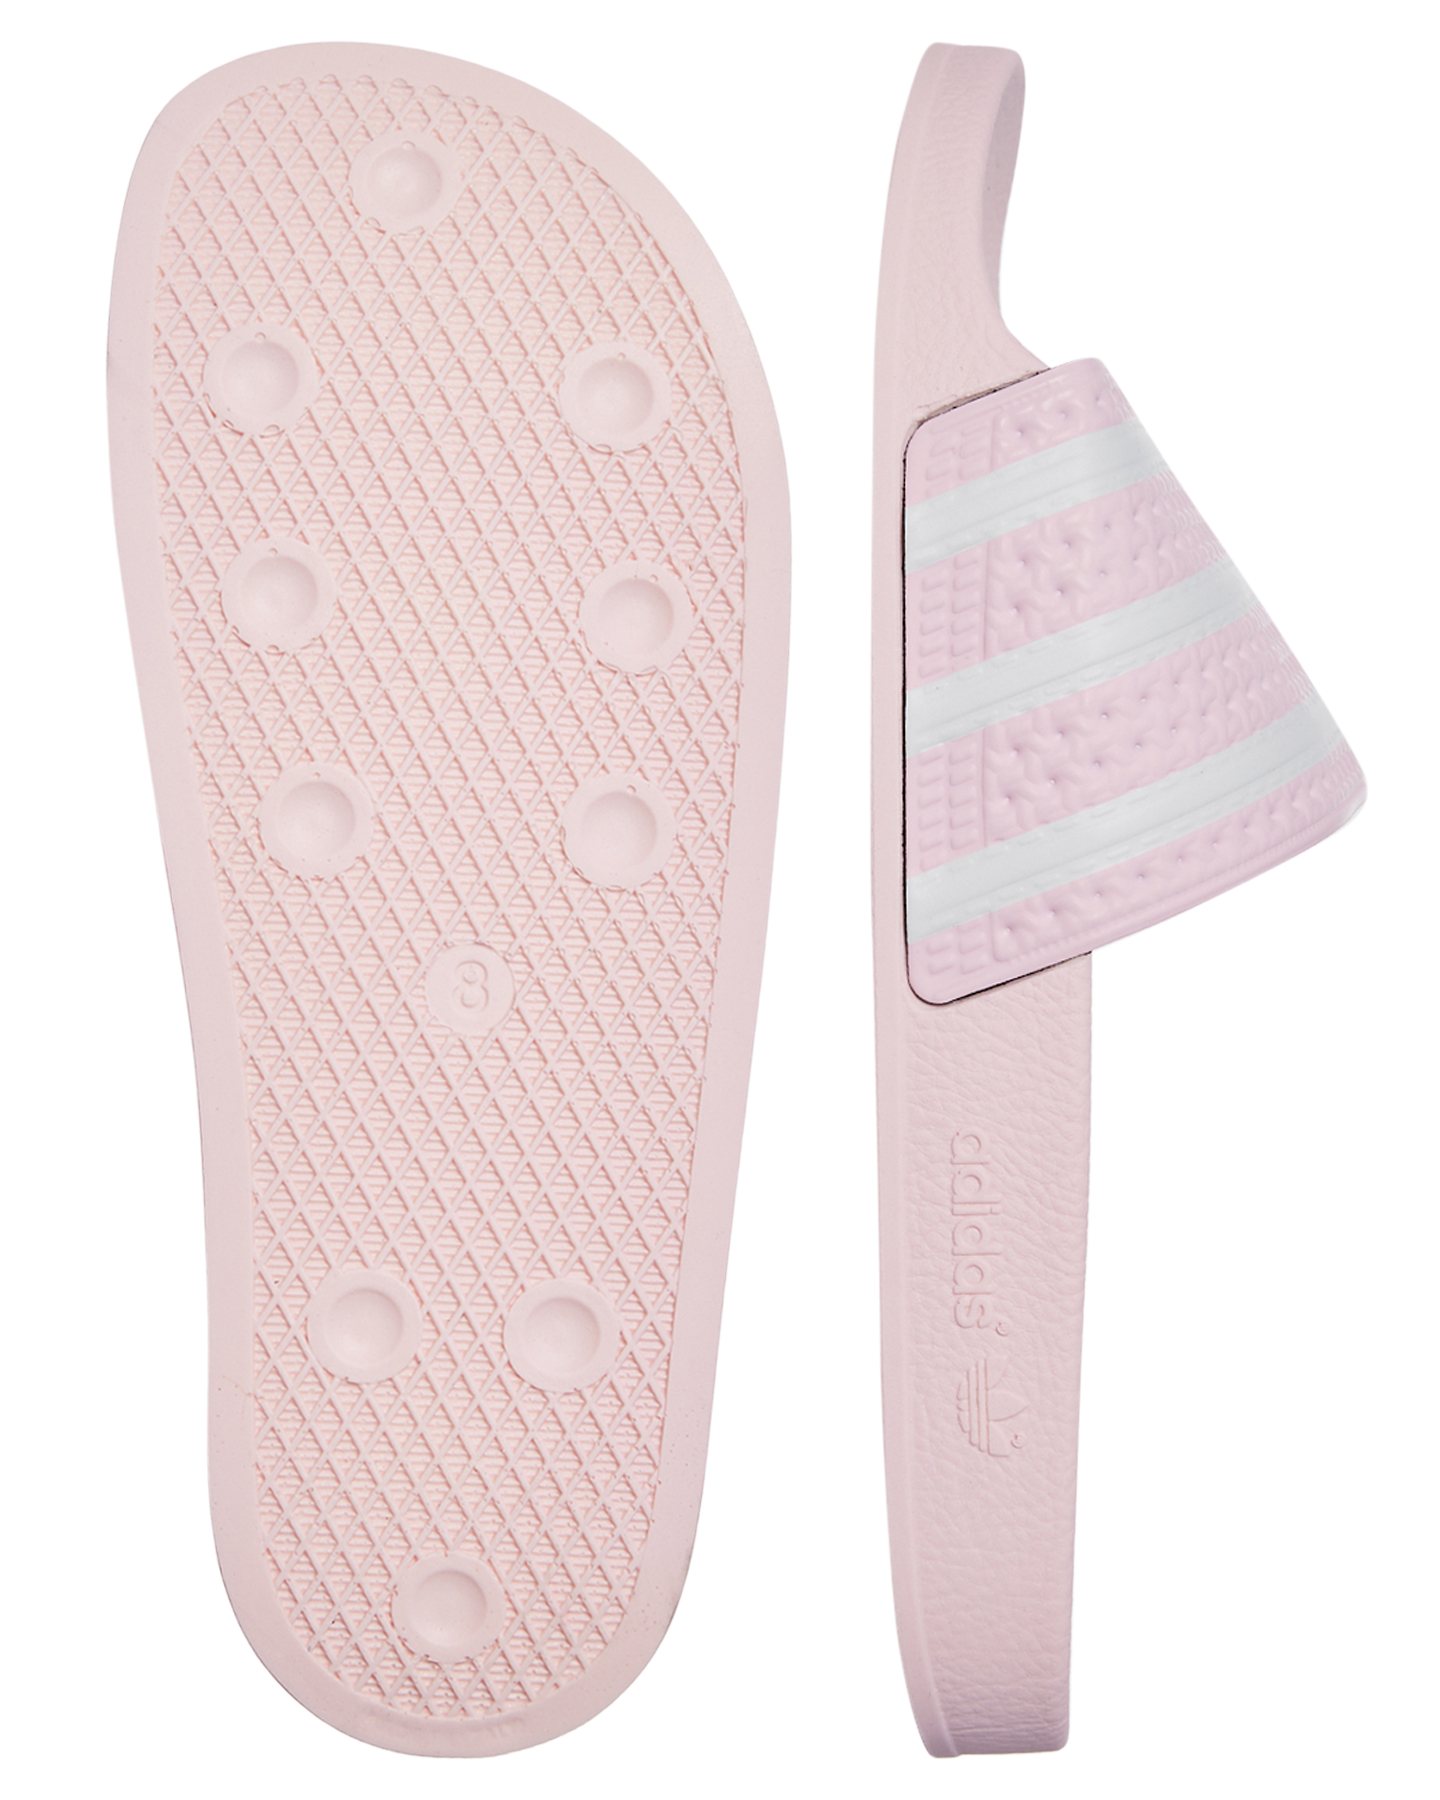 slides adidas pink